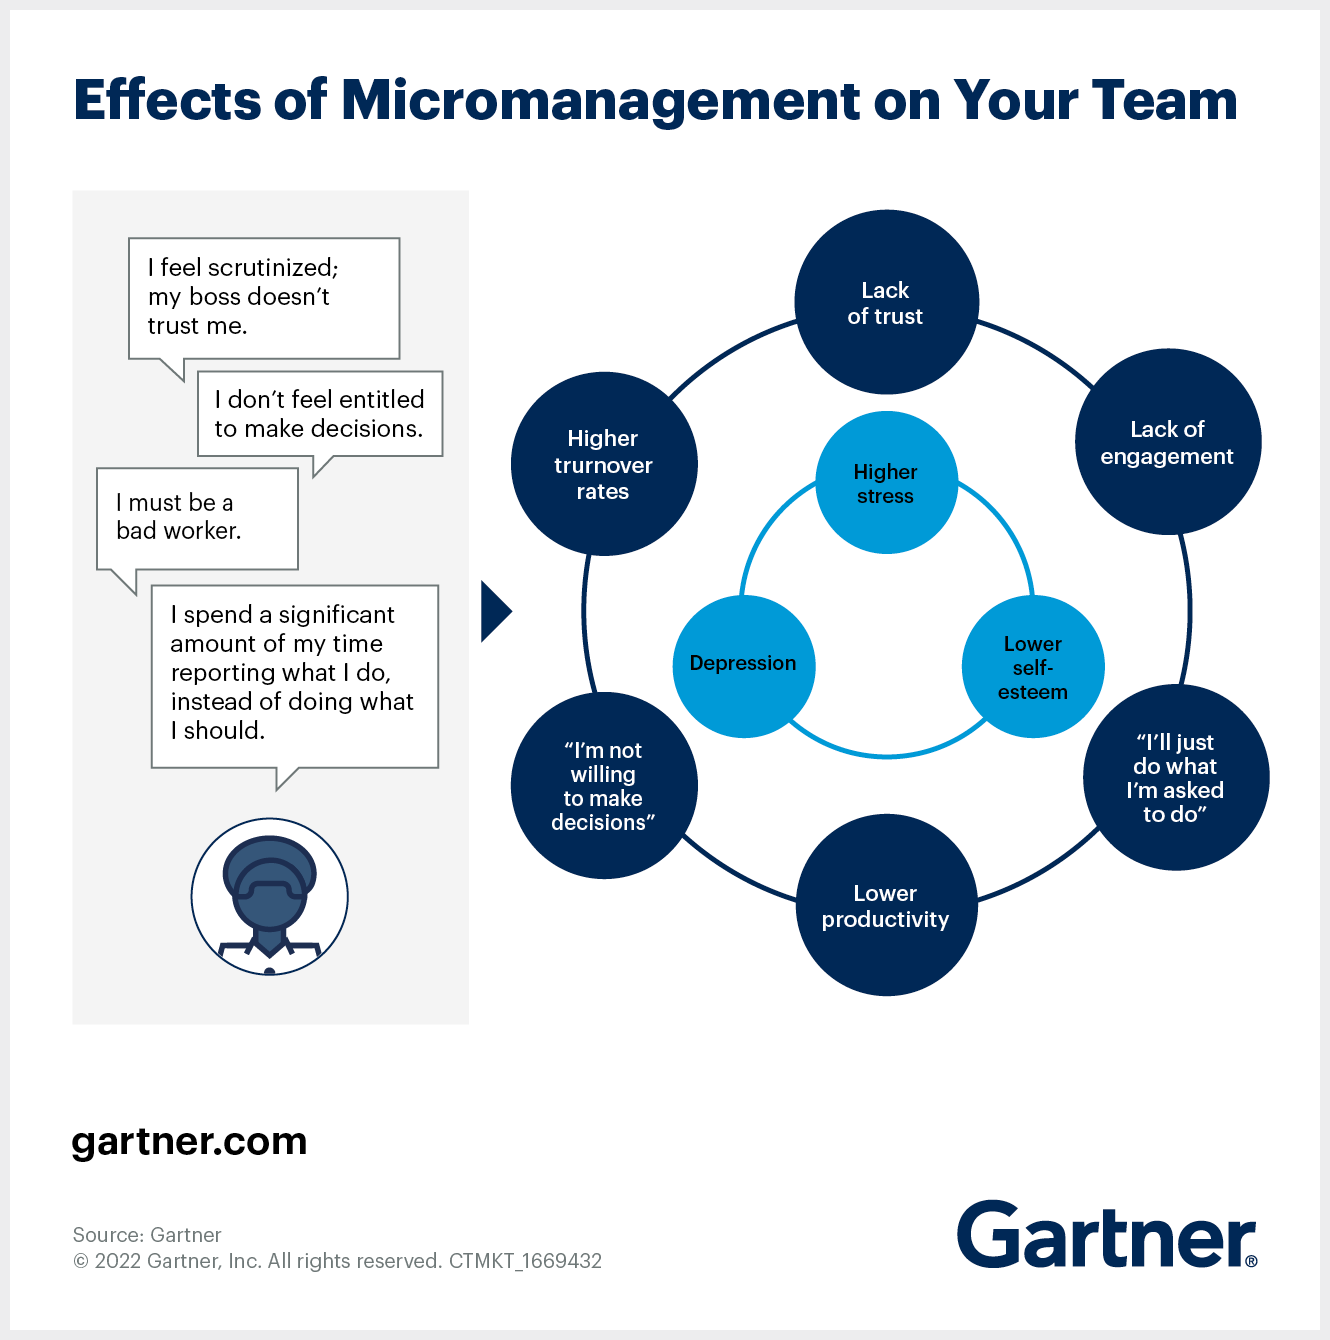 Sehen Sie, wie Mikromanagement Ihre Mitarbeiter stresst und weniger produktiv macht.